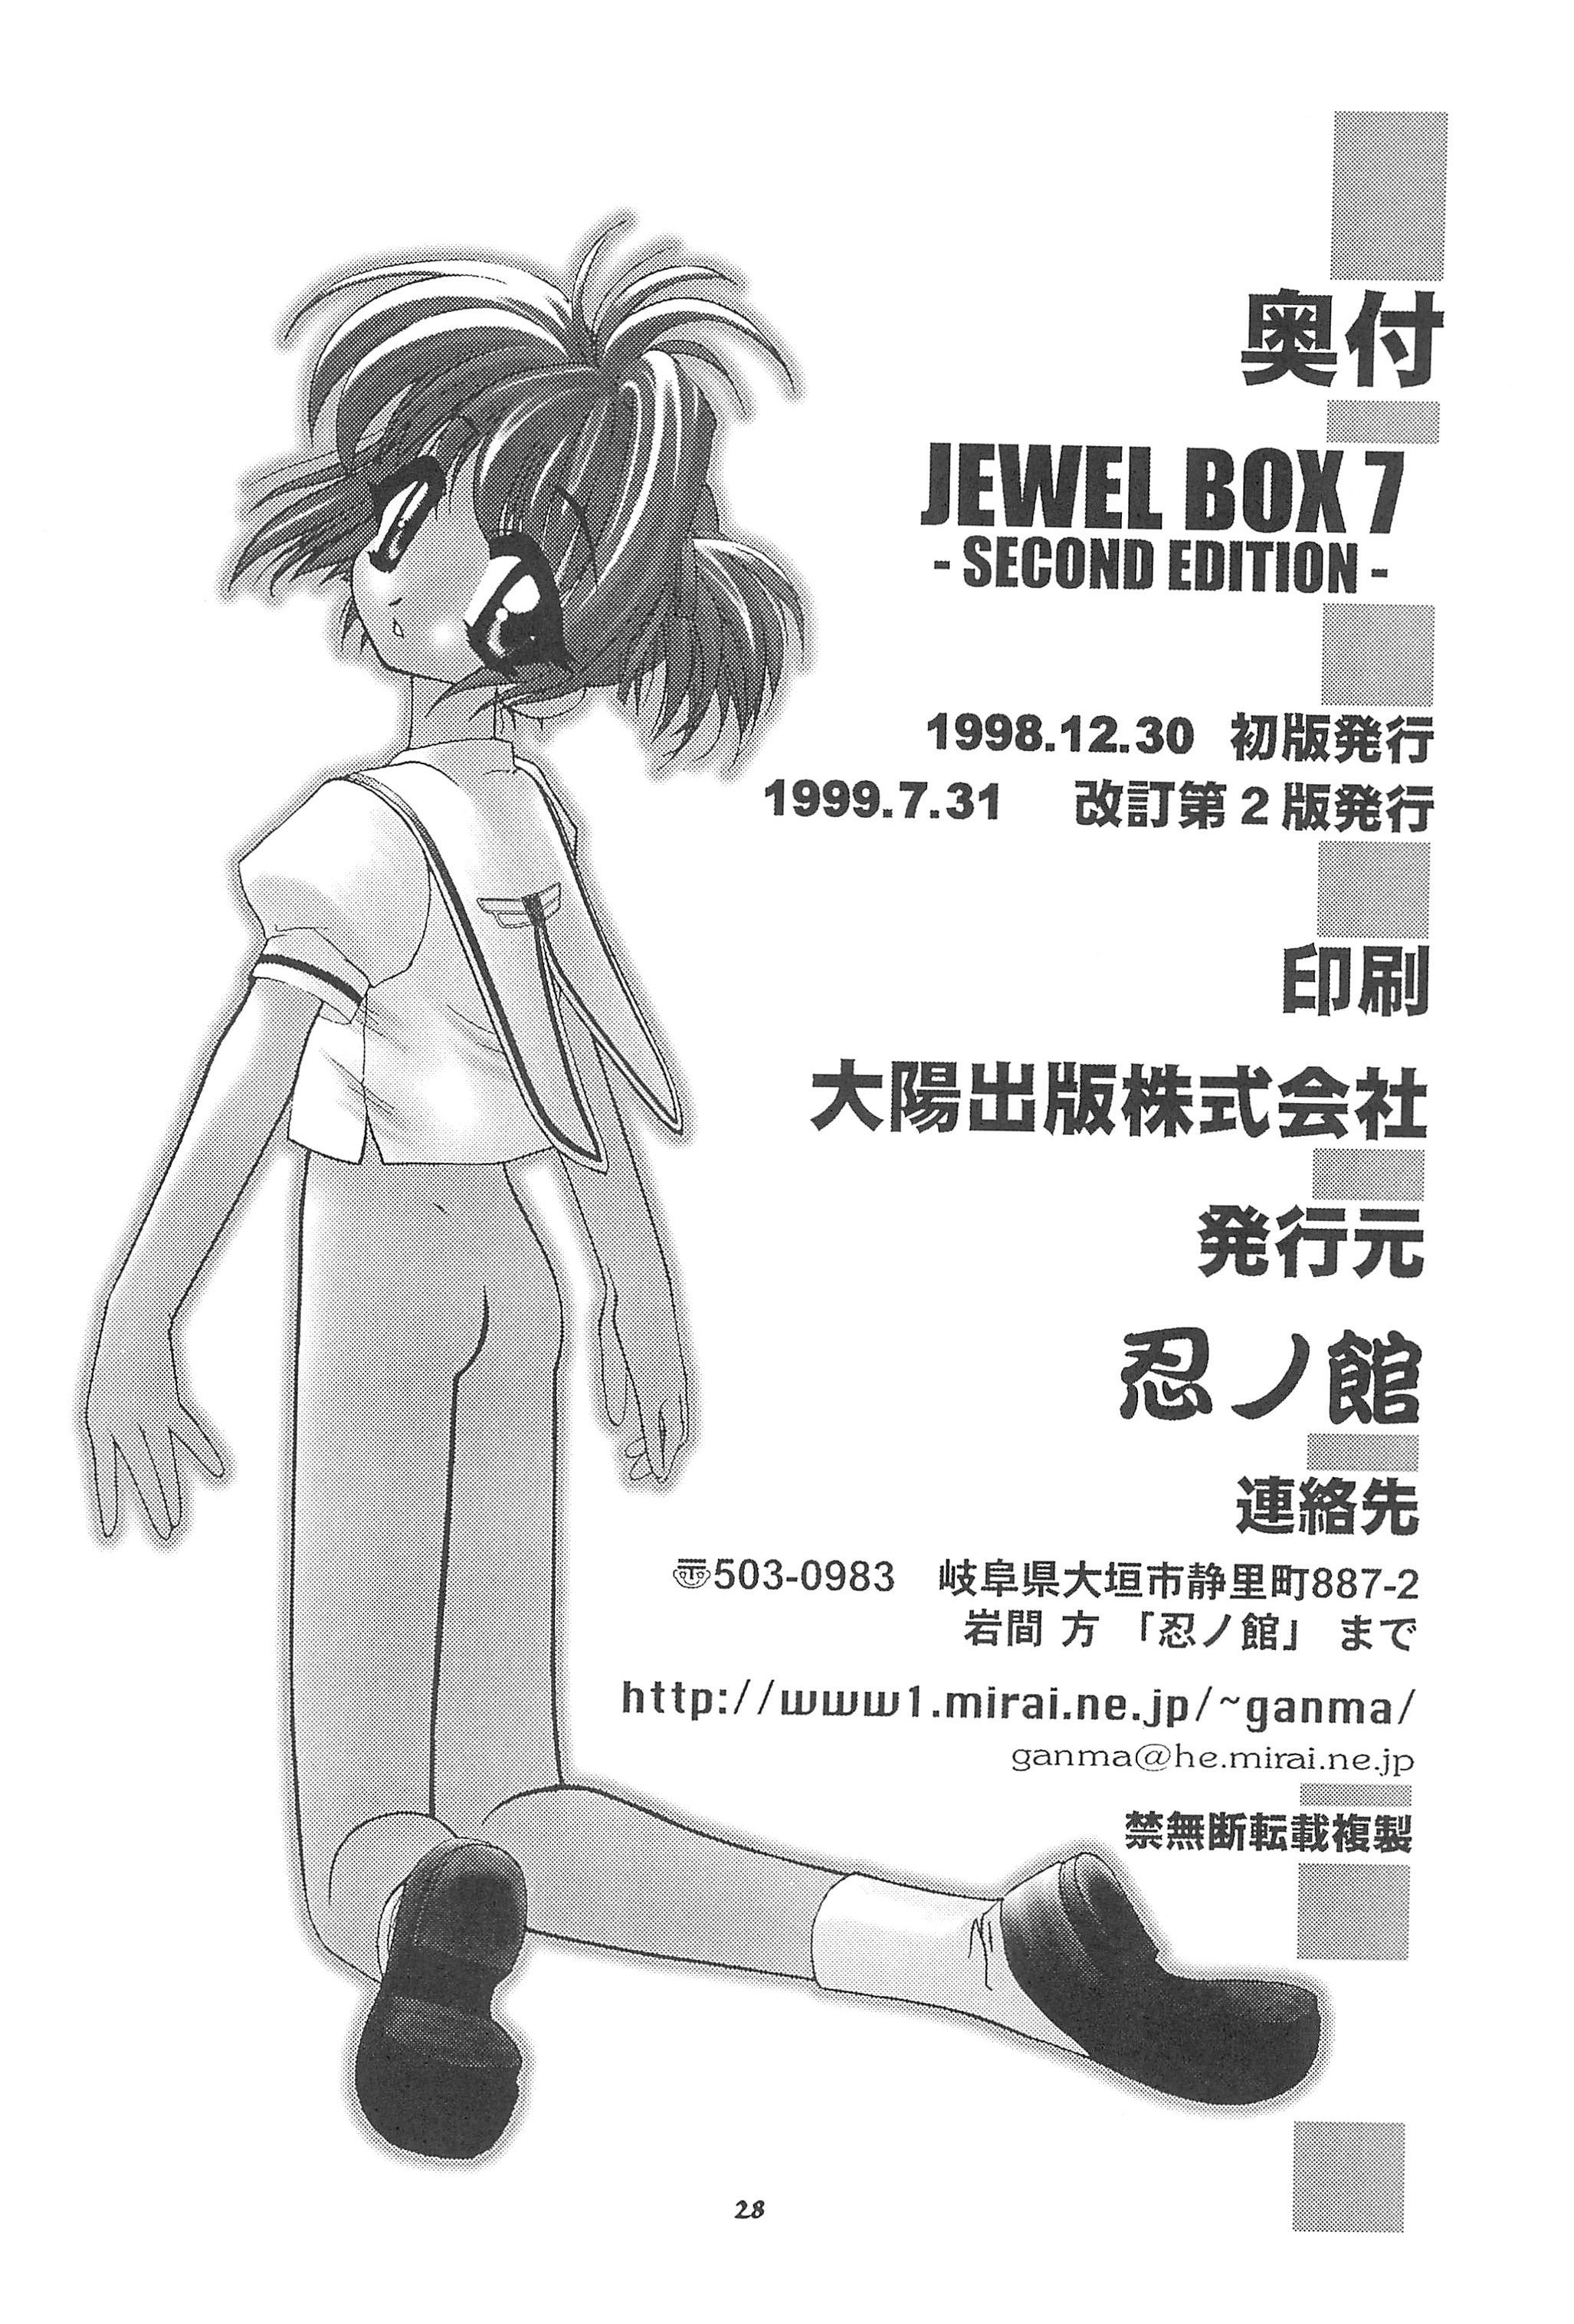 [Shinobi no Yakata (Iwama Yoshiki) JEWEL BOX 7 -SECOND EDITION- (CardCaptor Sakura) [1997-07-31] 31